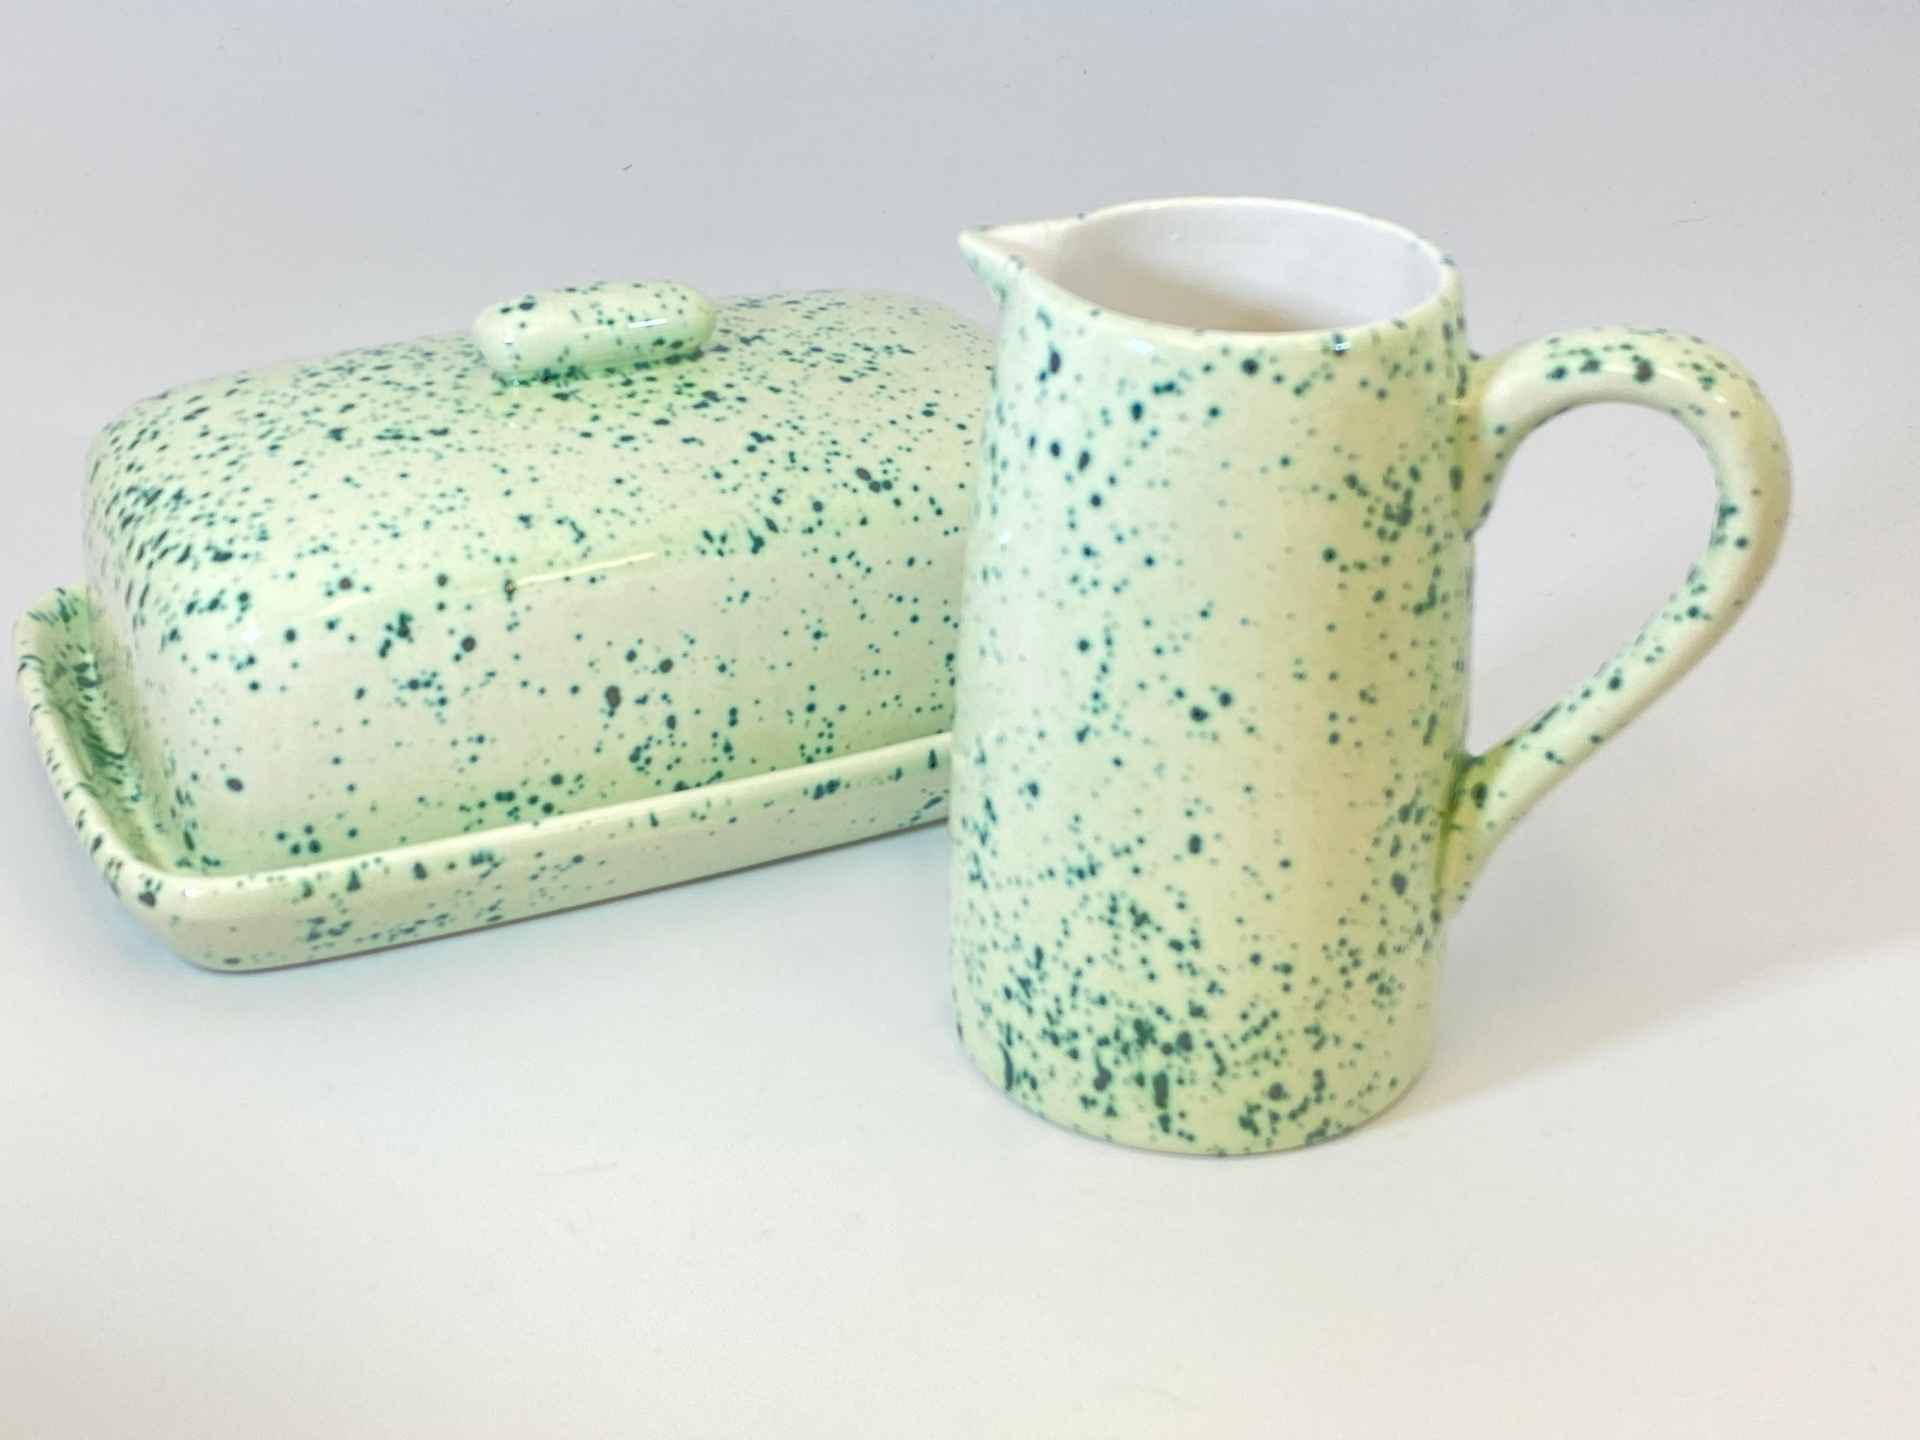 Butter Dish and Milk Jug Set Speckled Green Glaze